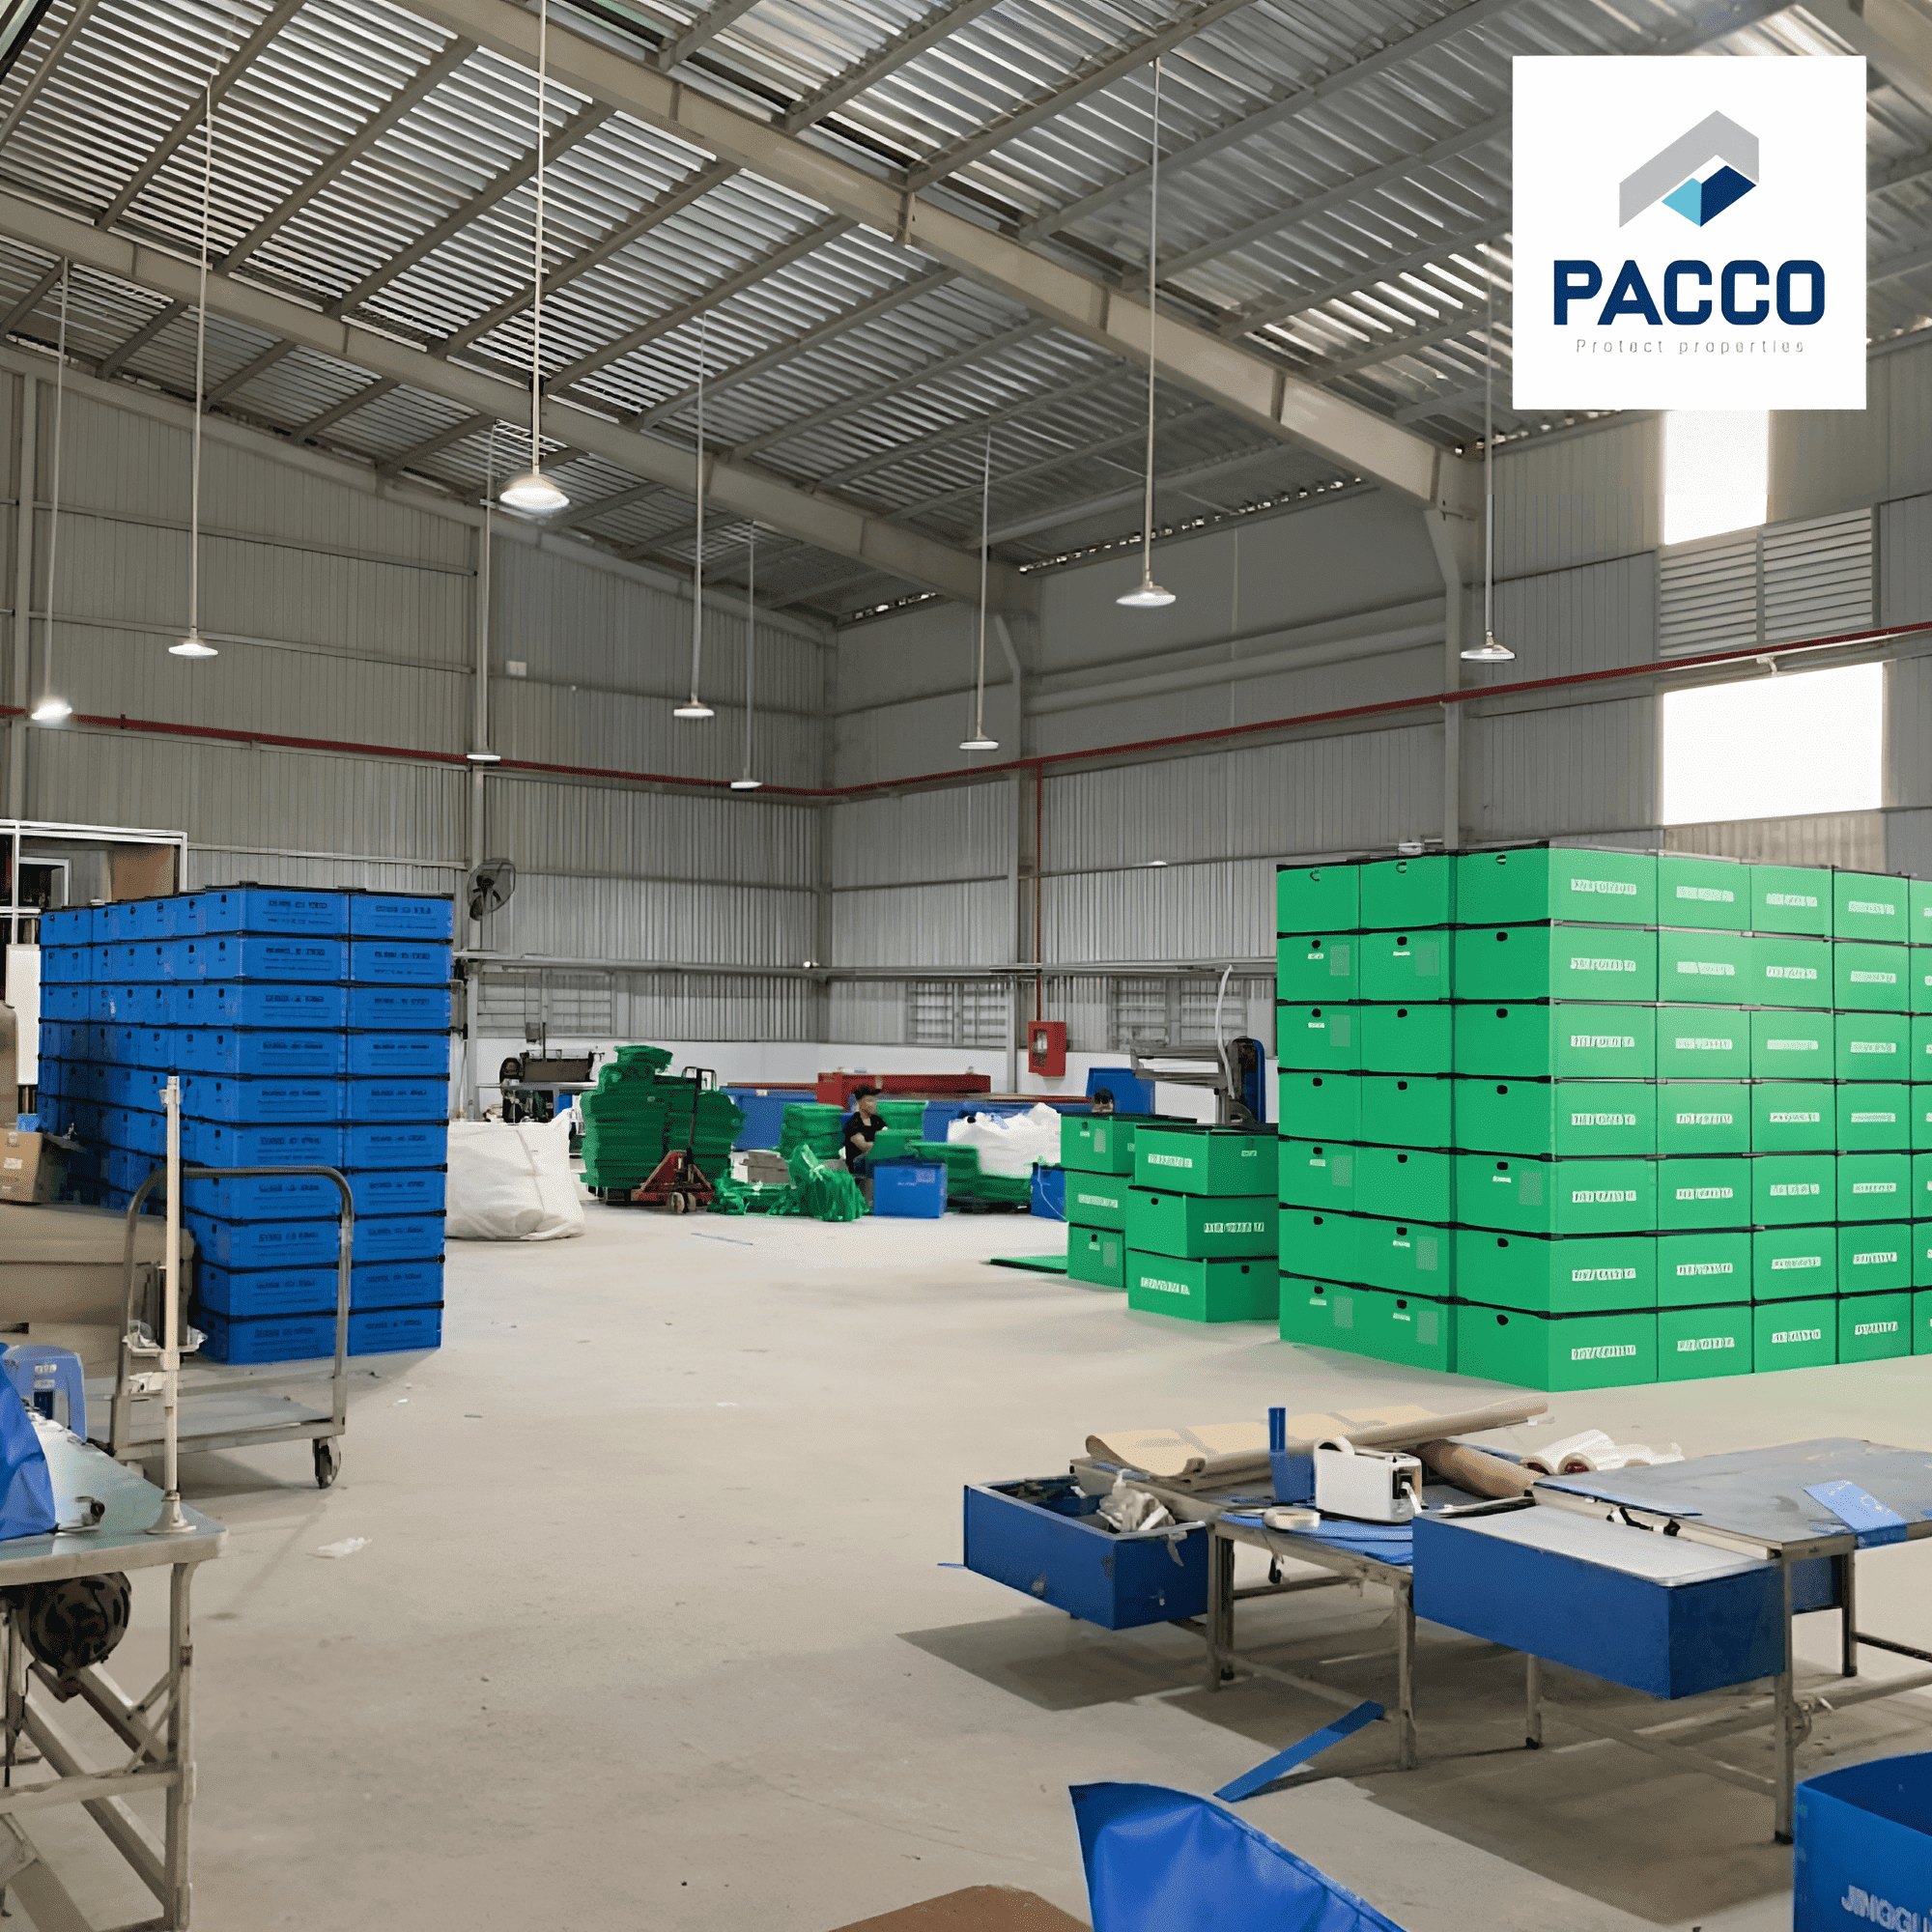 Pacco là đơn vị sản xuất tấm nhựa và thùng nhựa PP uy tín được nhiều doanh nghiệp lựa chọn